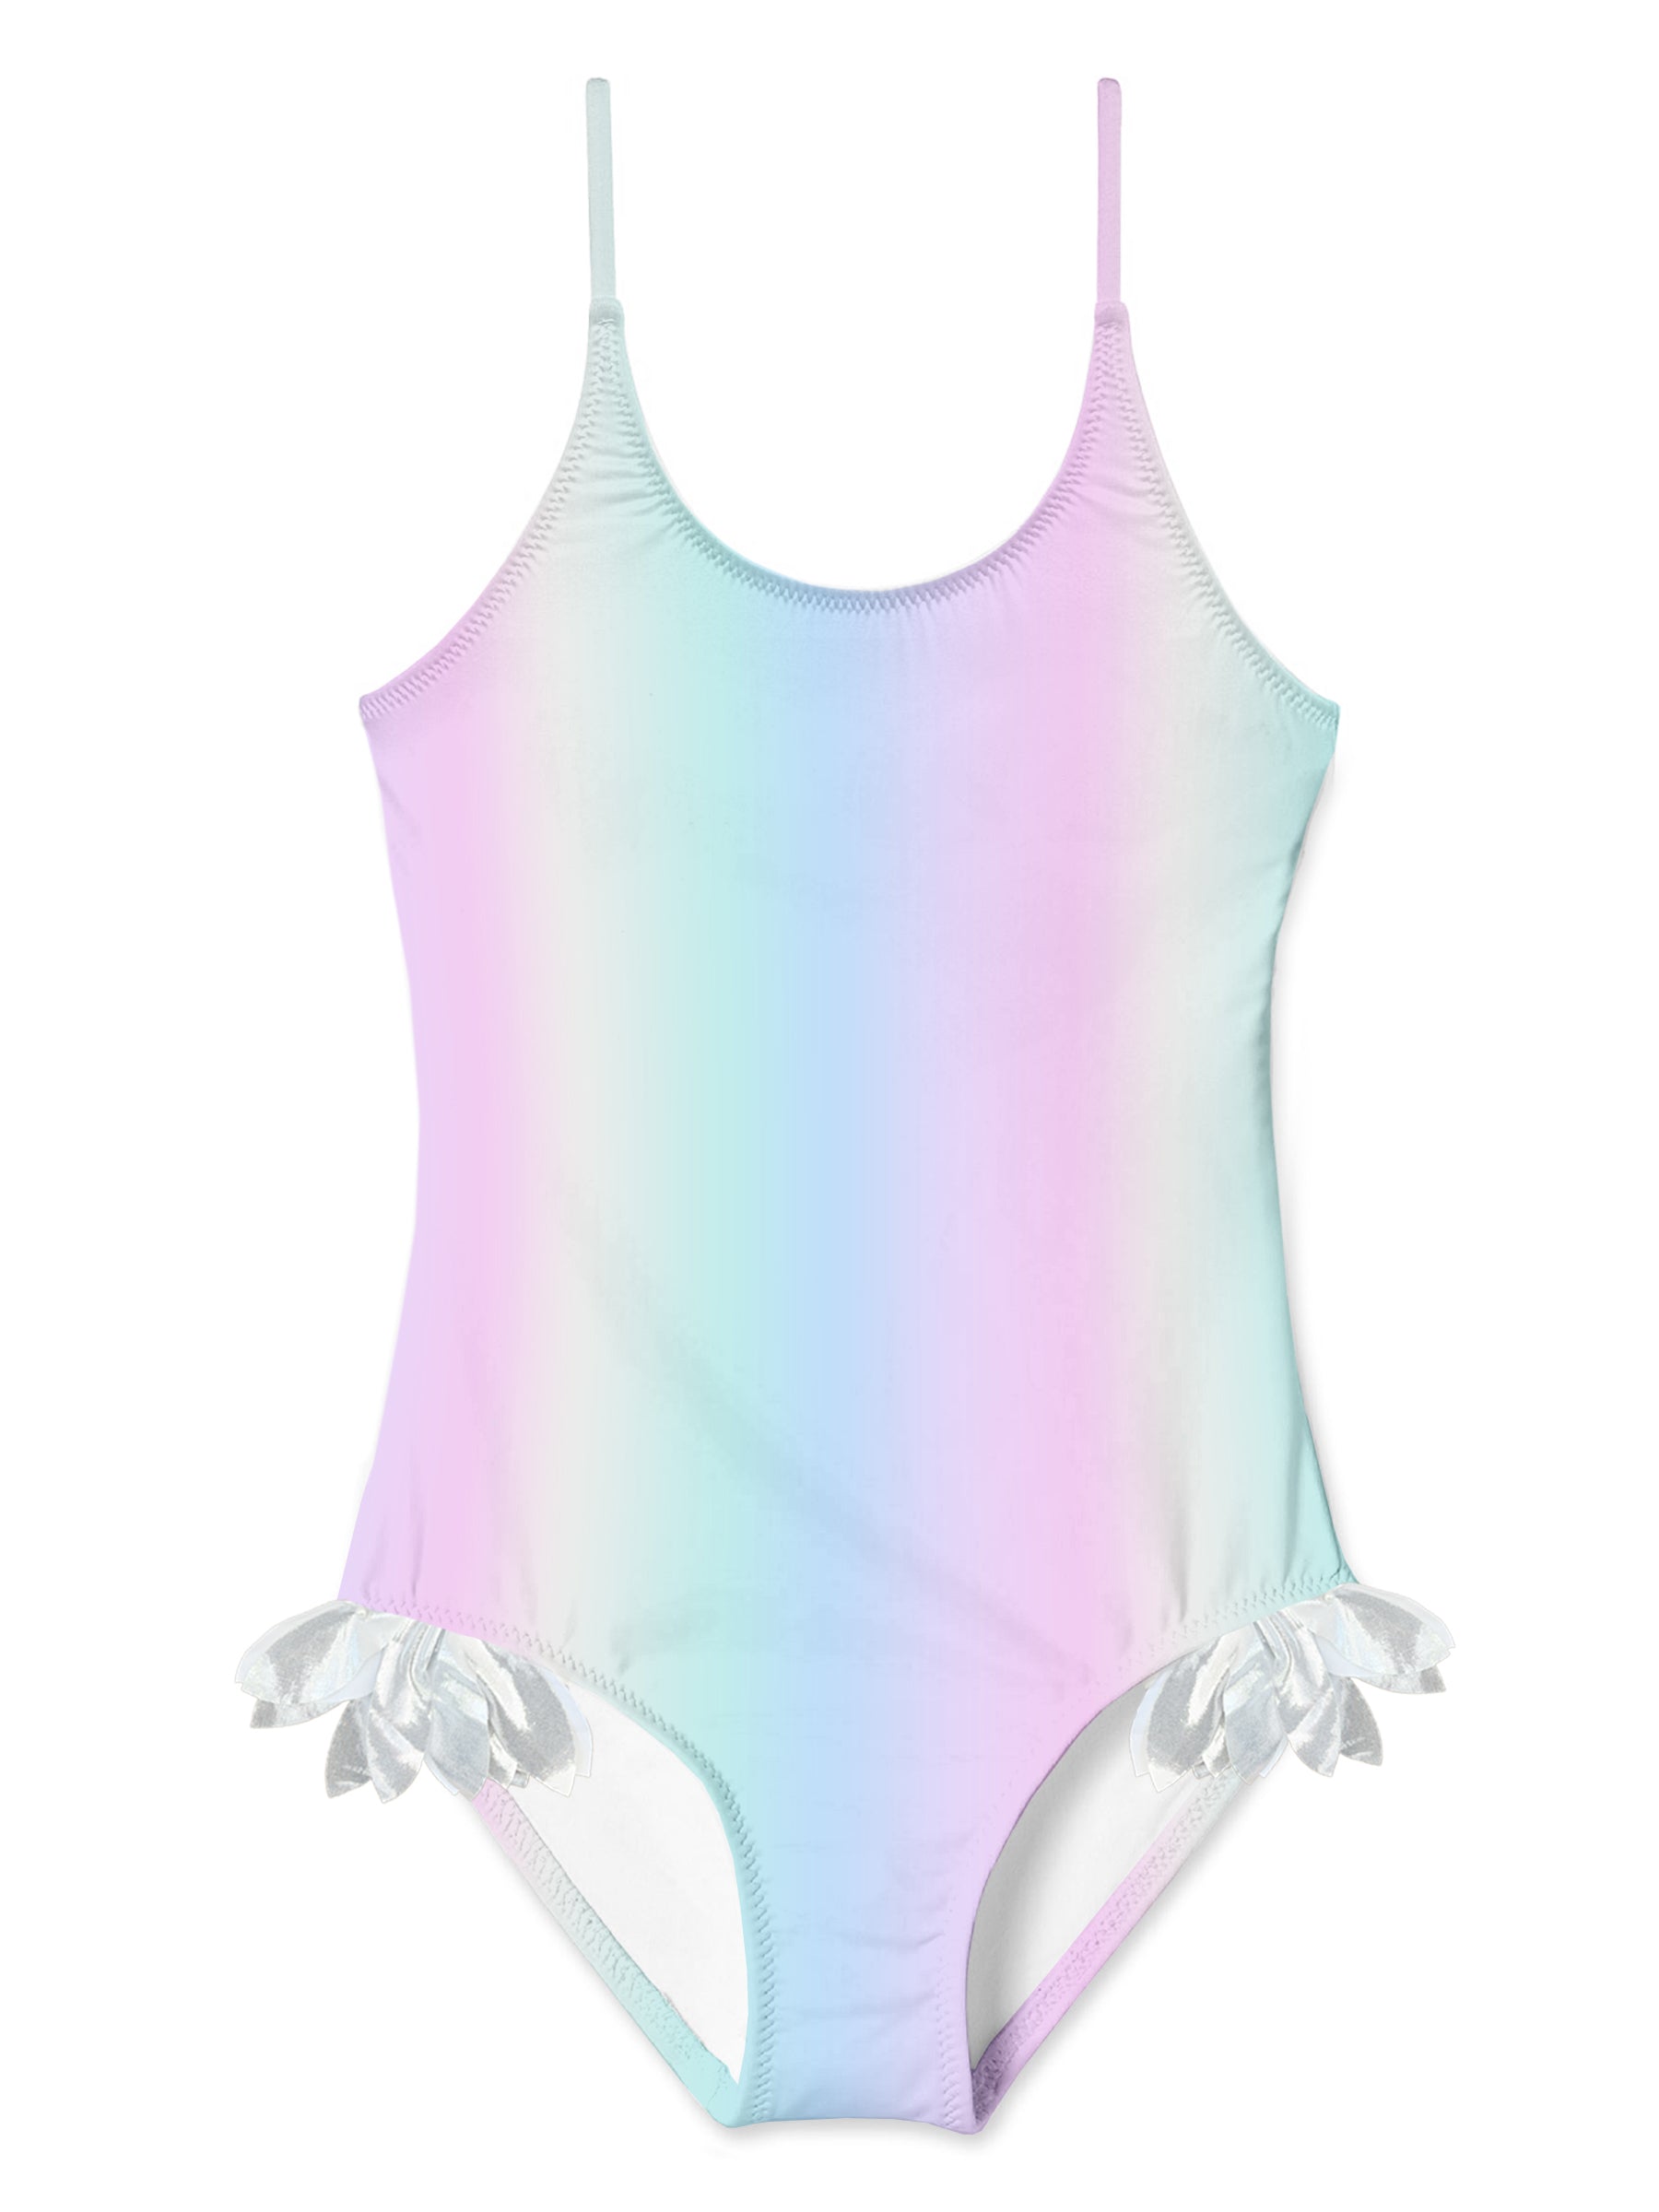 rainbow swimsuit for girls, rainbow swimwear for girls, rainbow bathing suit for girls